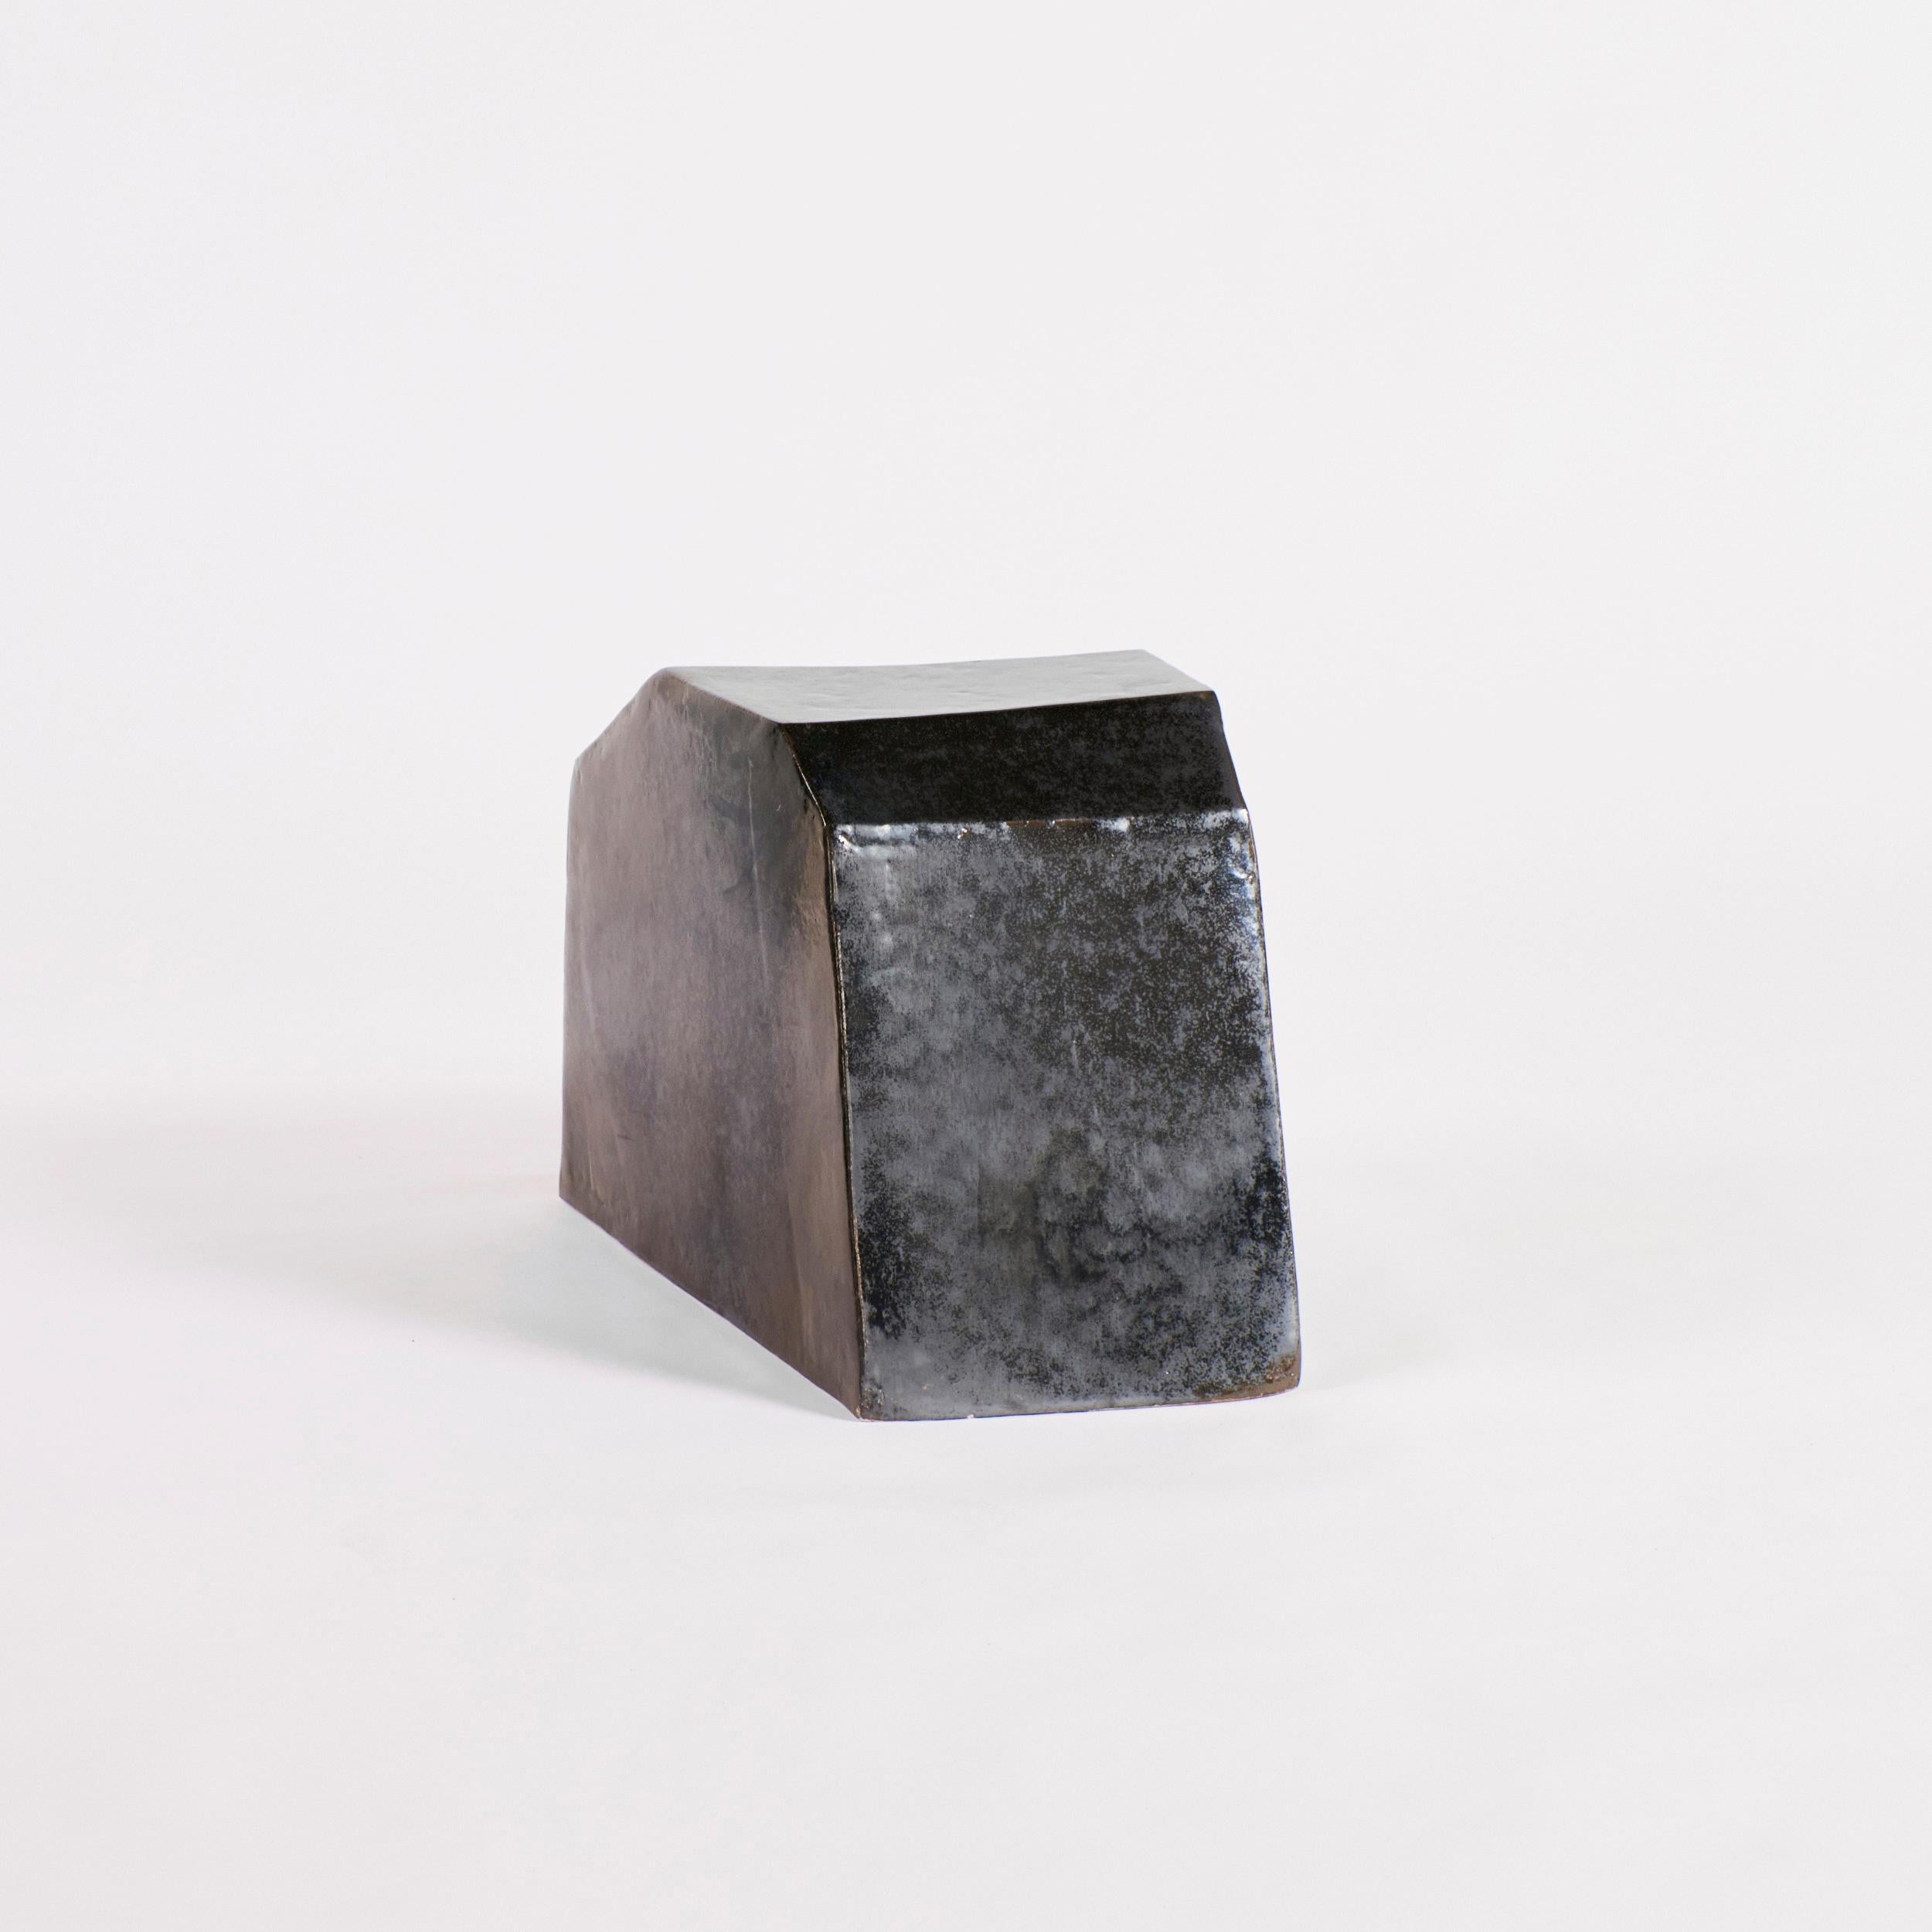 Petite table d'appoint en céramique - Forme géométrique
Conçu par le project 213A en 2023

Table d'appoint en céramique sculptée à la main avec une forme géométrique fabriquée dans l'atelier de céramique interne de Project 213A et finie avec une